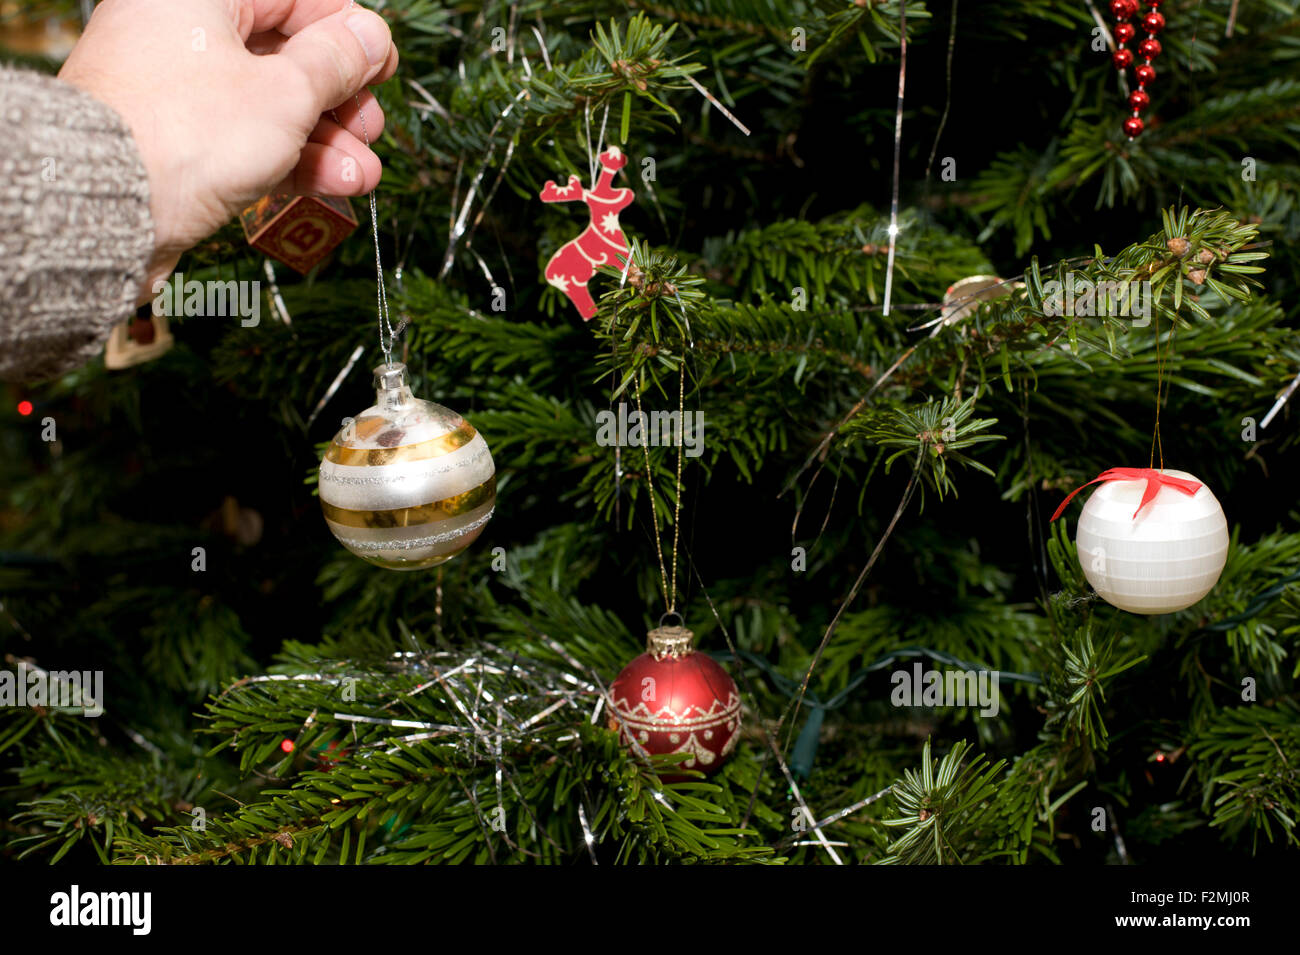 Cerrar imagen mostrando un hombre colgado de una mano de adornos de oro y plata en un tradicional árbol de navidad Foto de stock